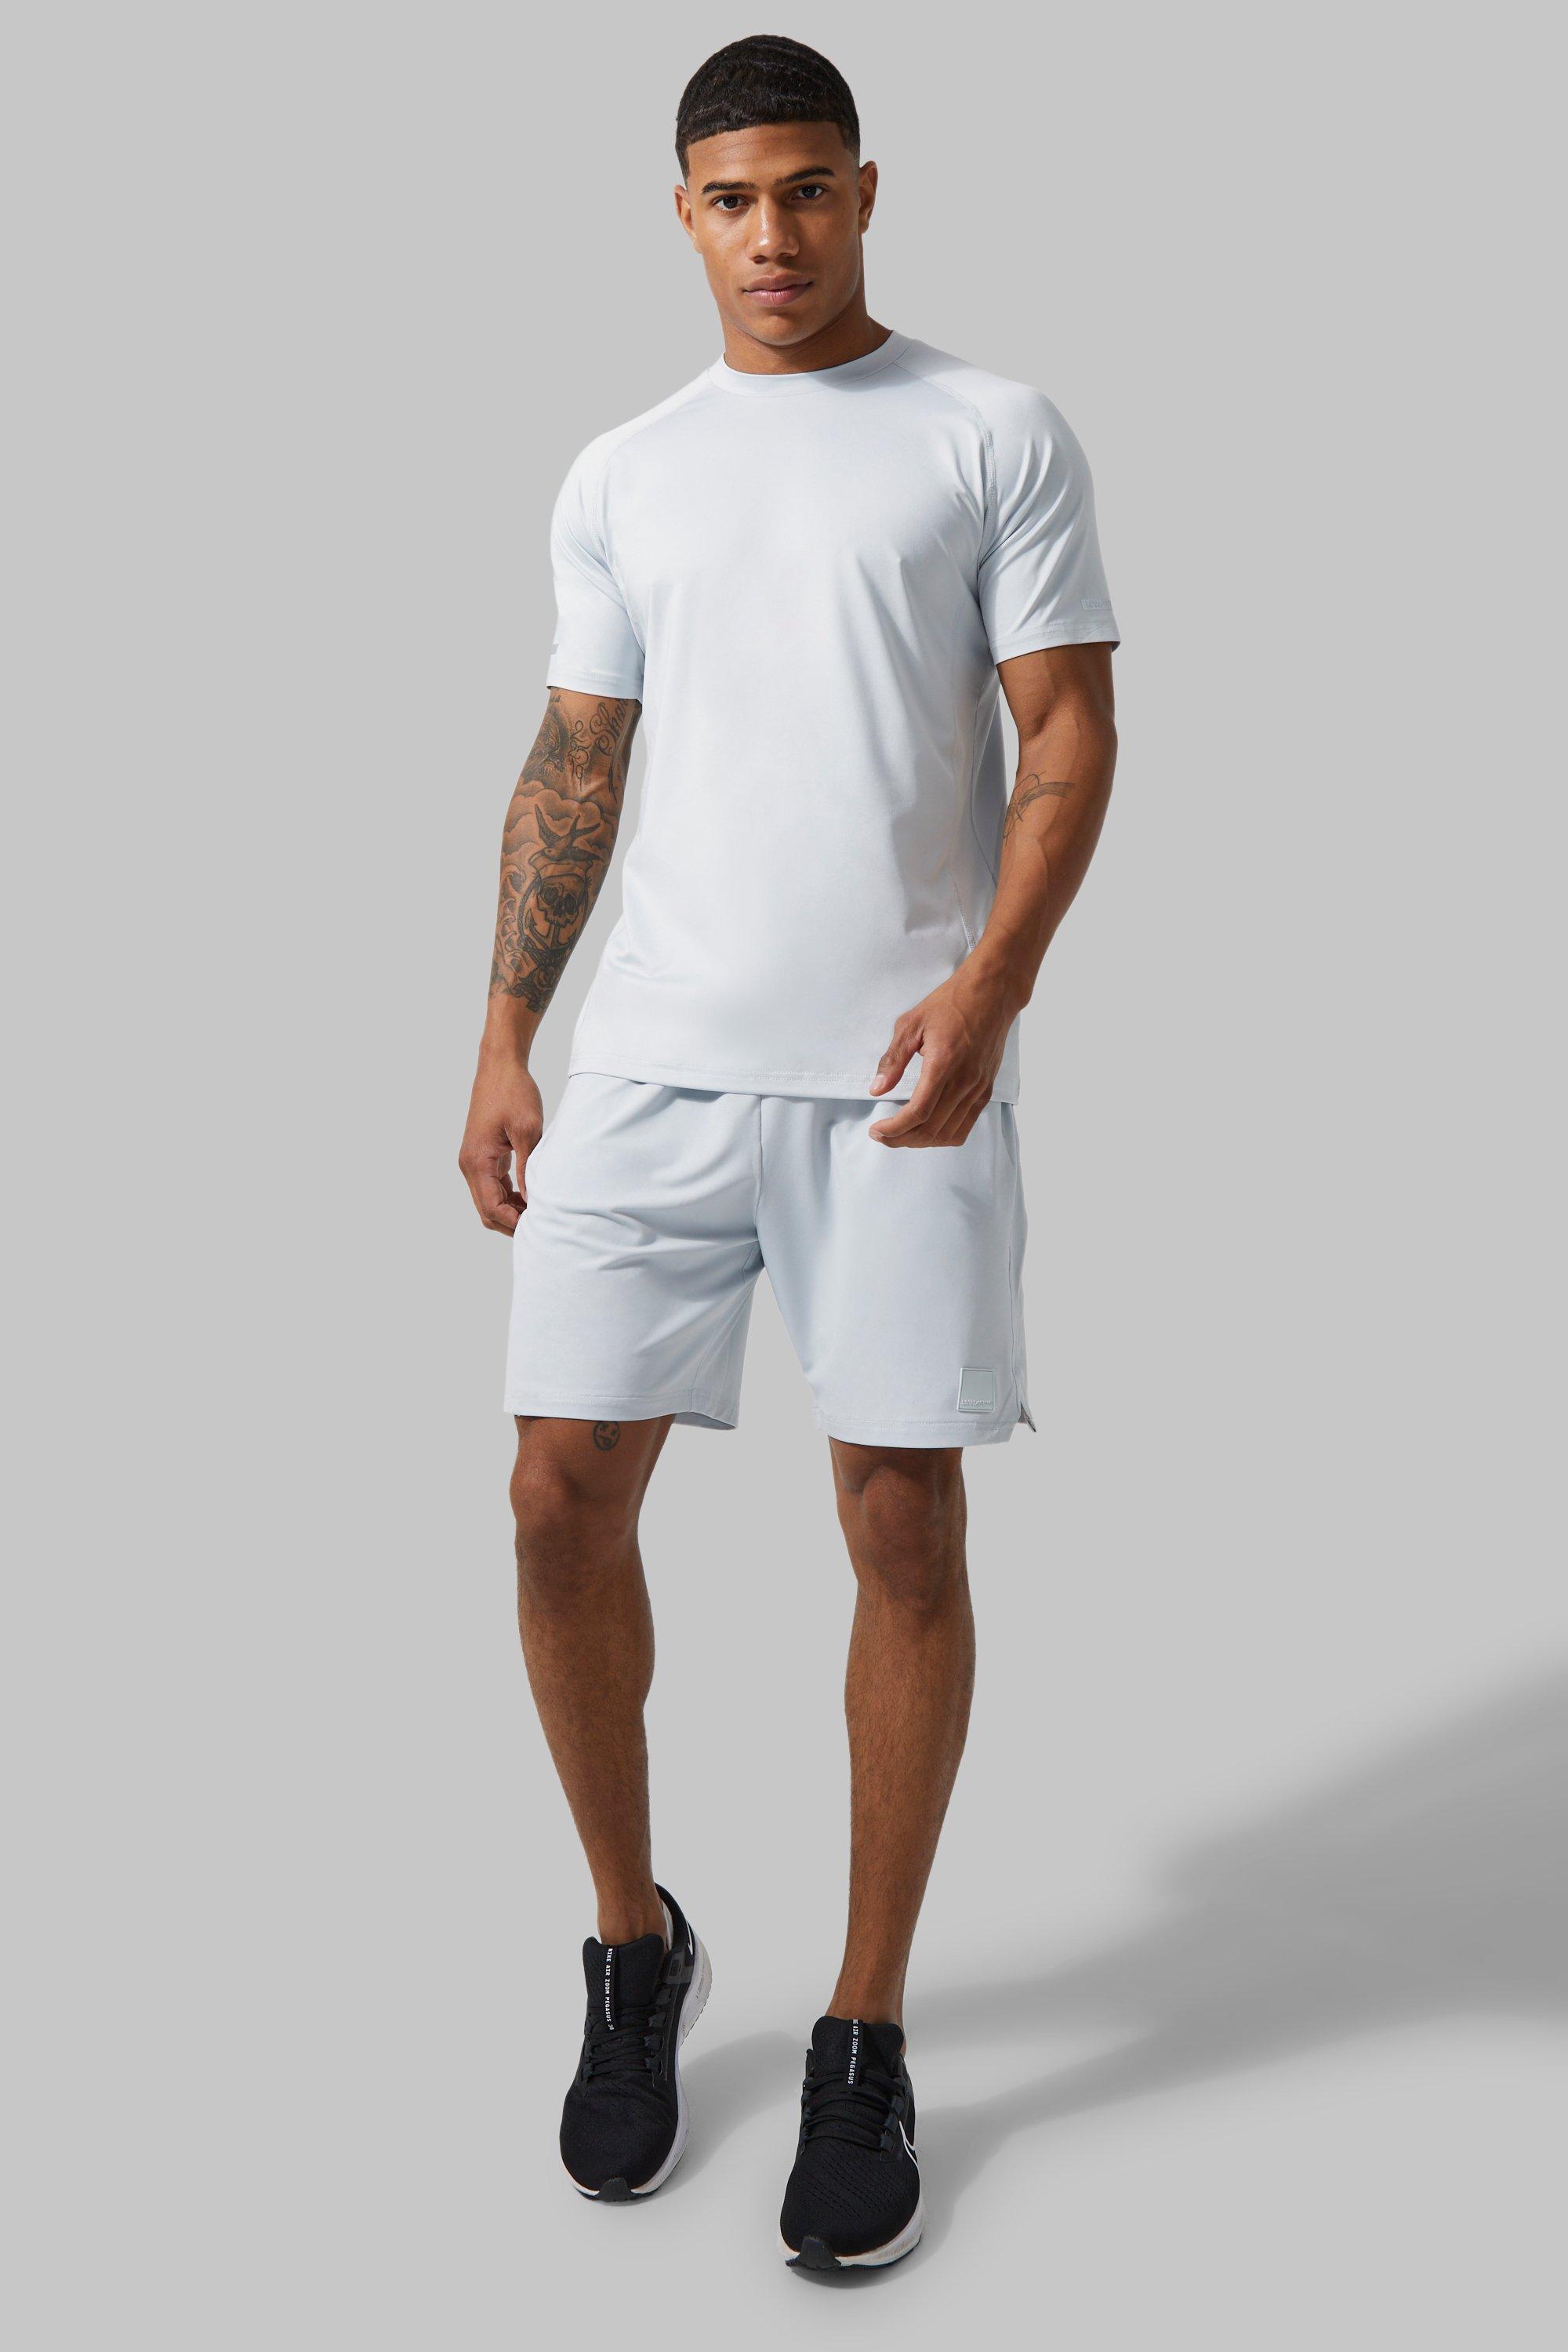 men's man active contrast t-shirt and short set - grey - l, grey